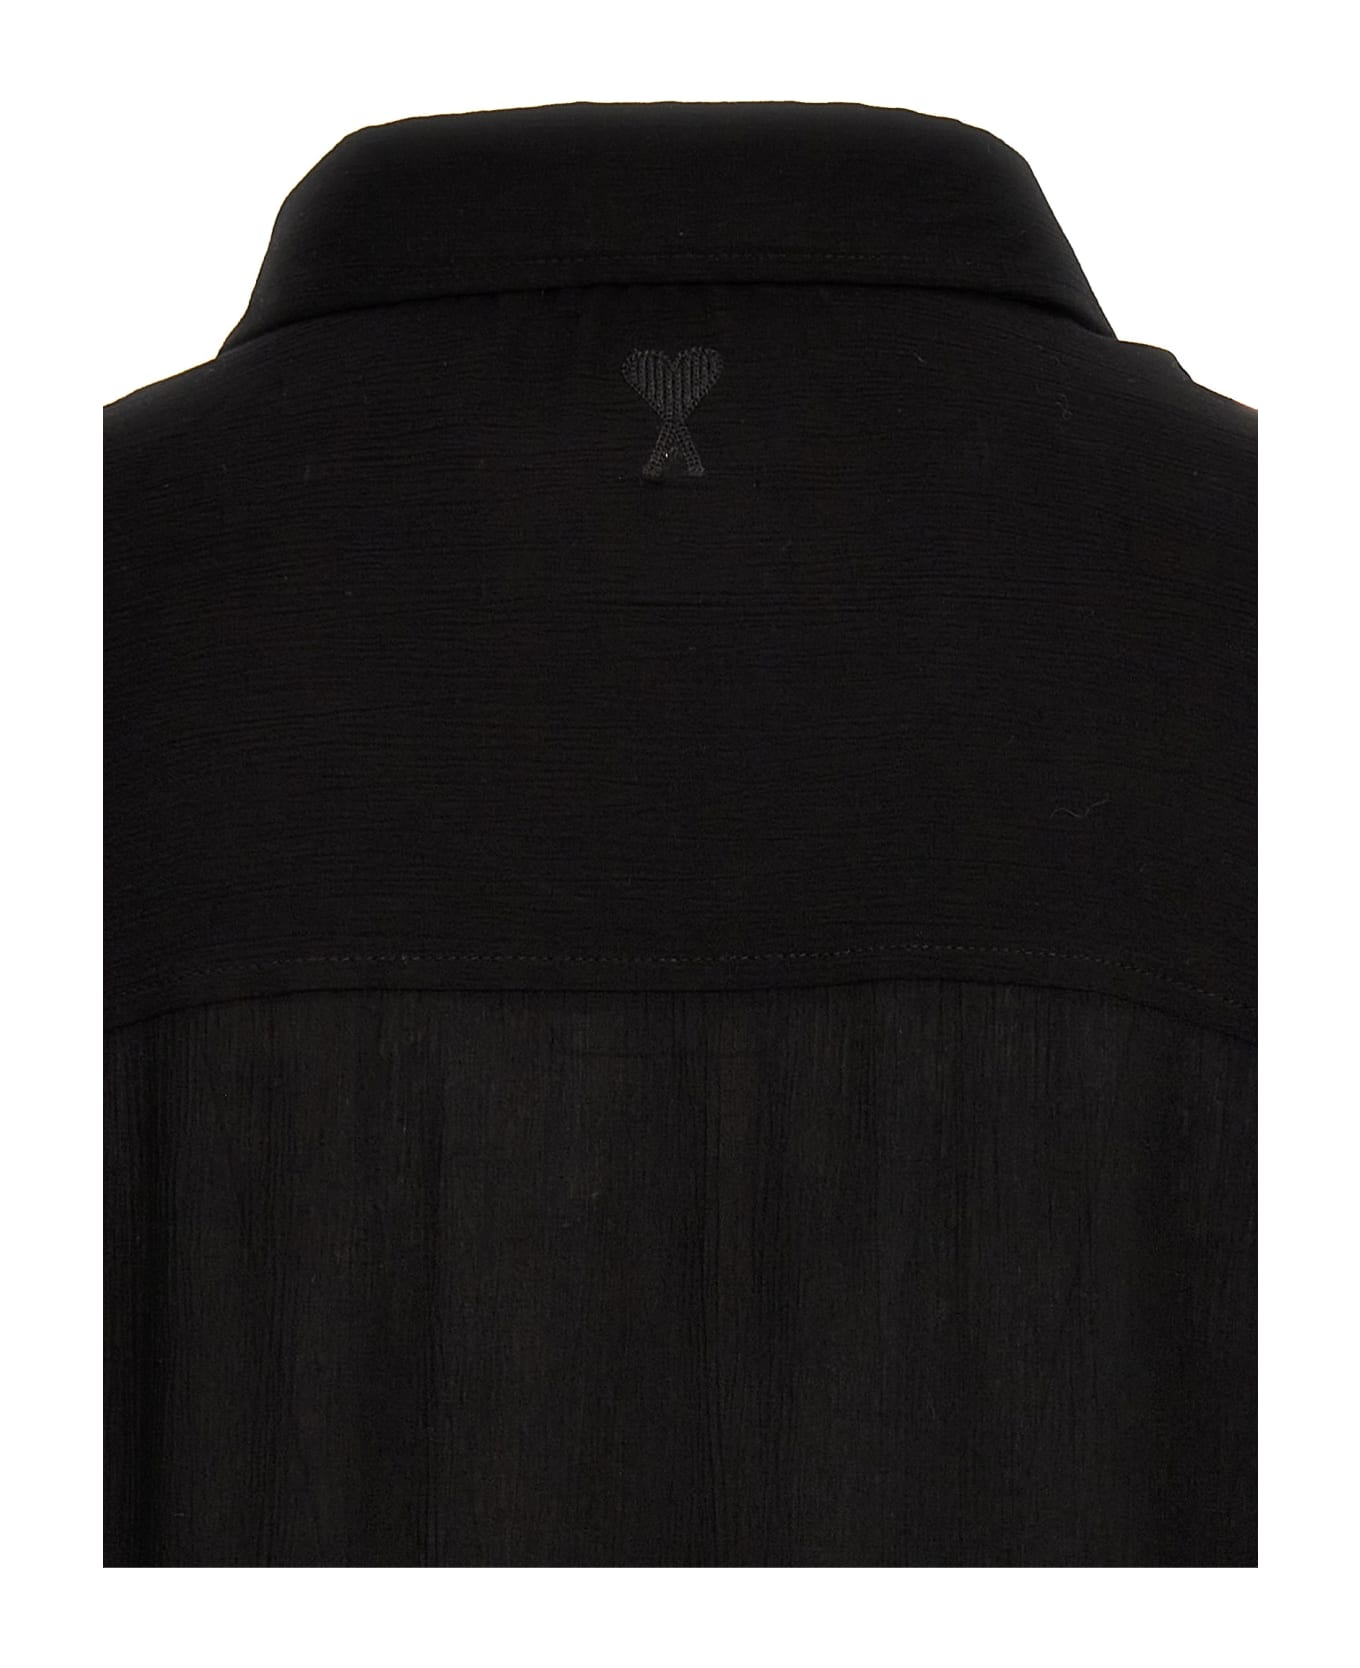 Ami Alexandre Mattiussi Sleeveless Shirt - Black   シャツ